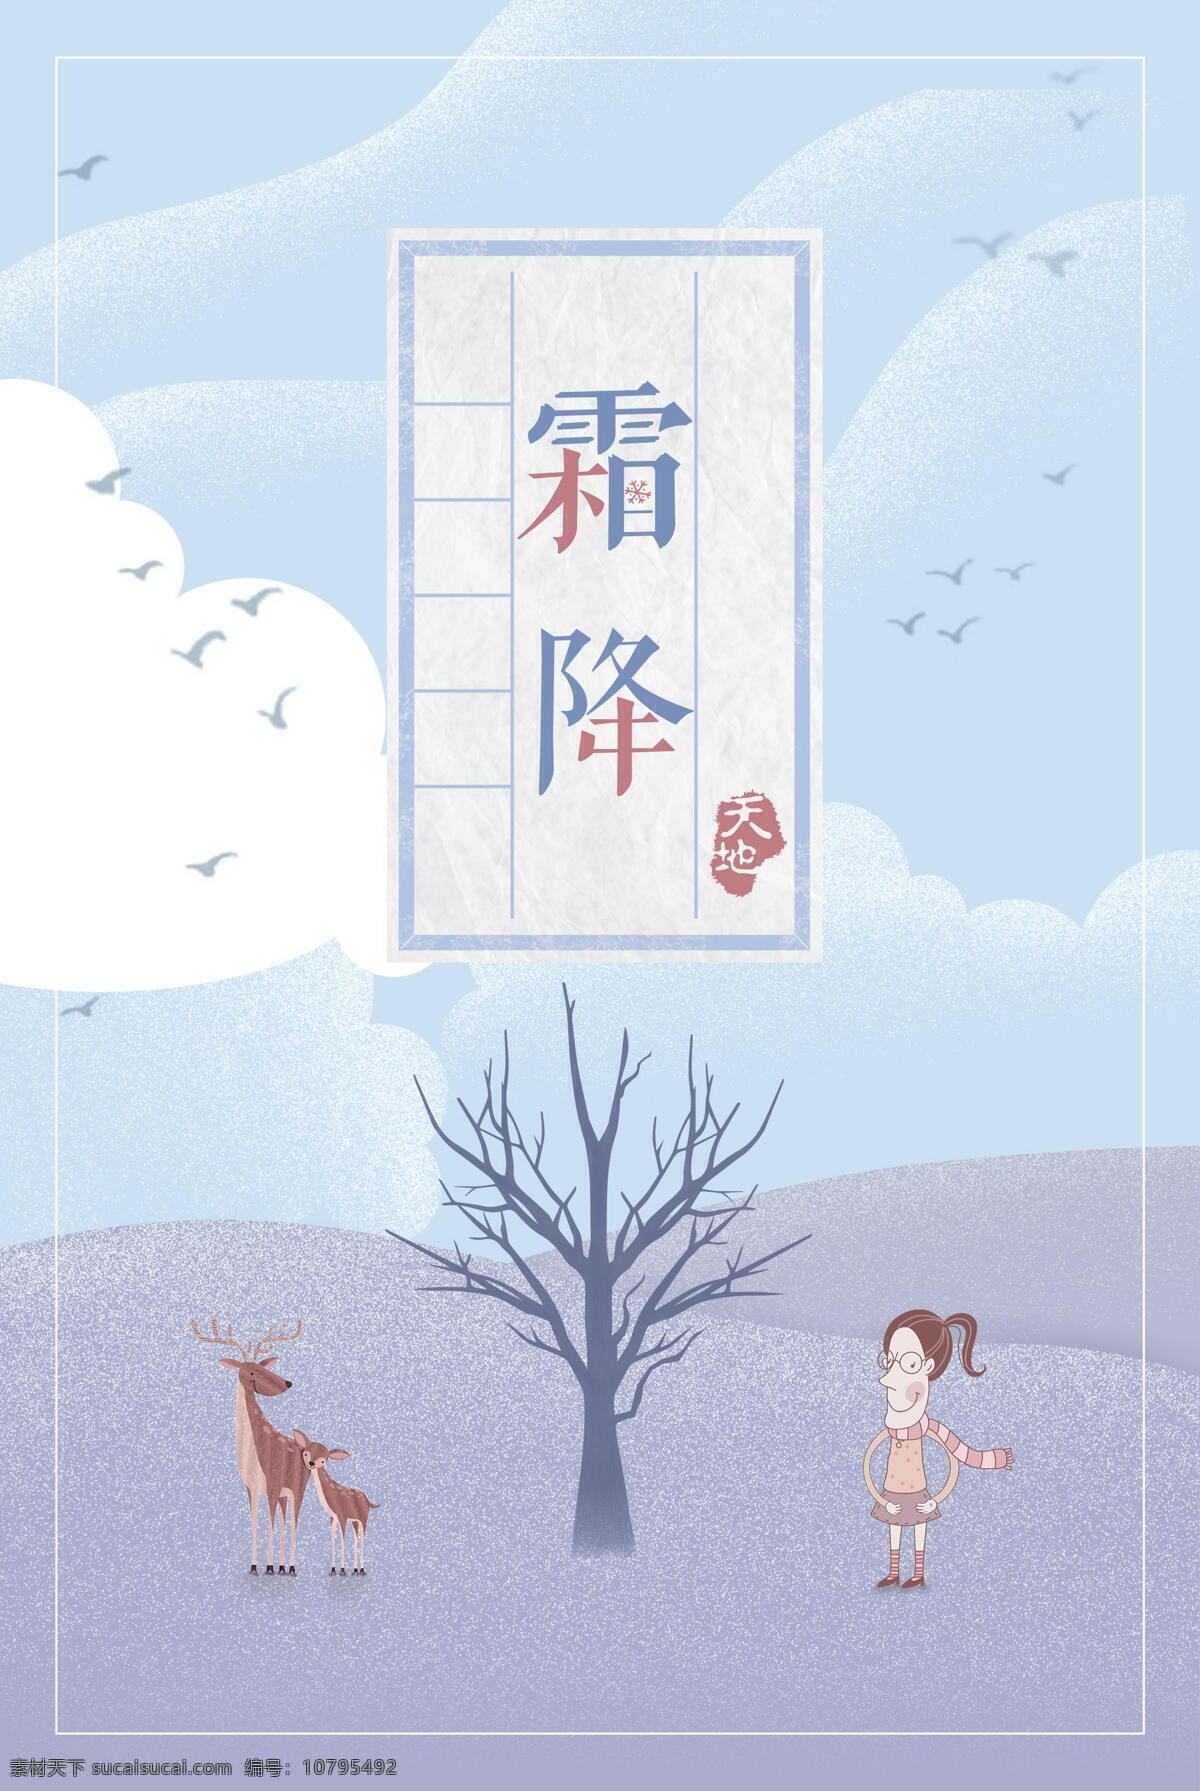 中国 风 节气 霜降 背景 中国风 水墨 枯树 蒸气 海报 广告